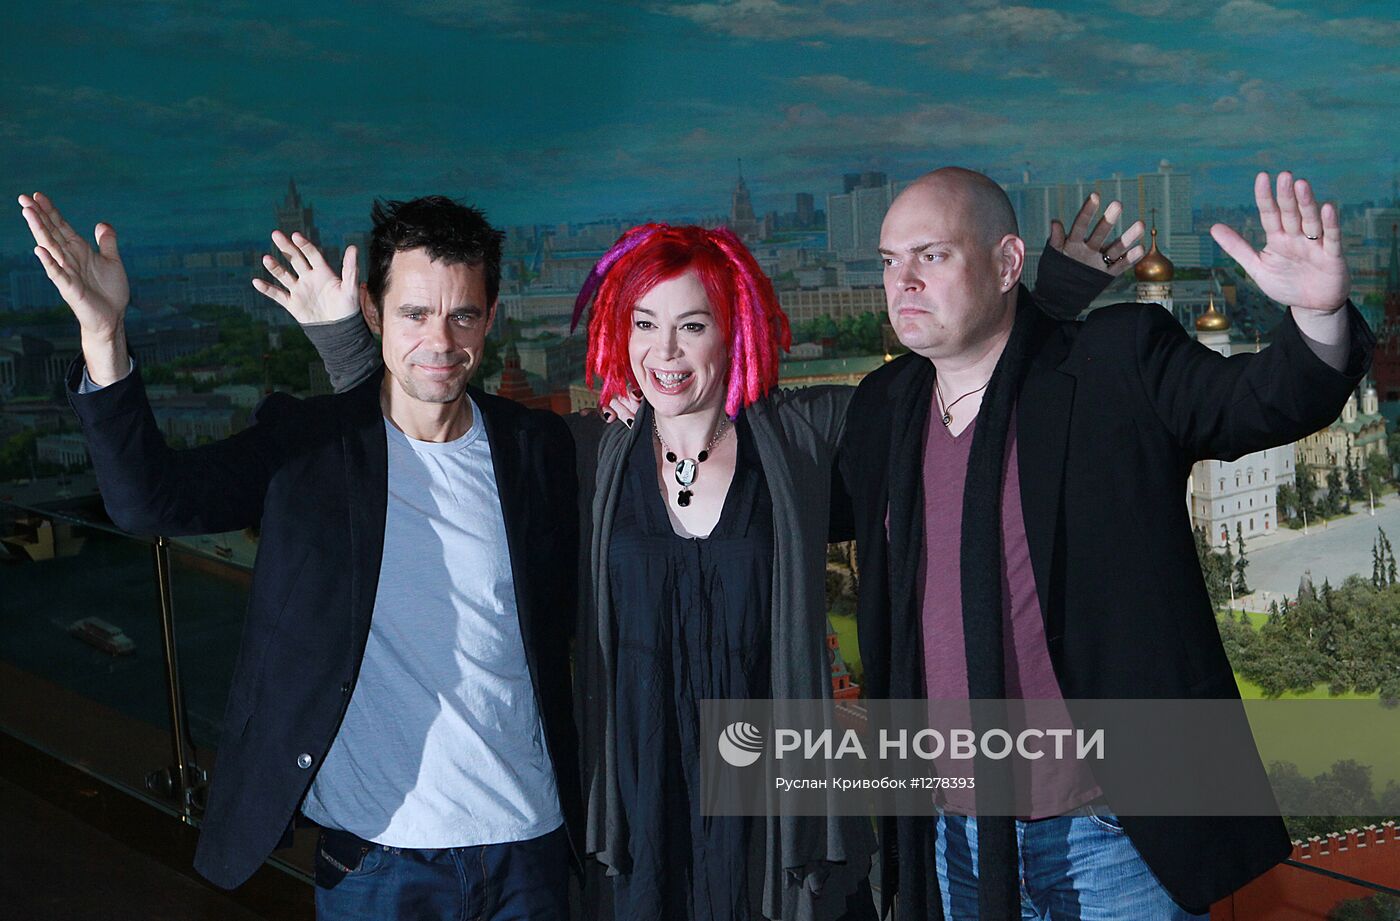 Фотоколл творческой группы фильма "Облачный атлас" в Москве